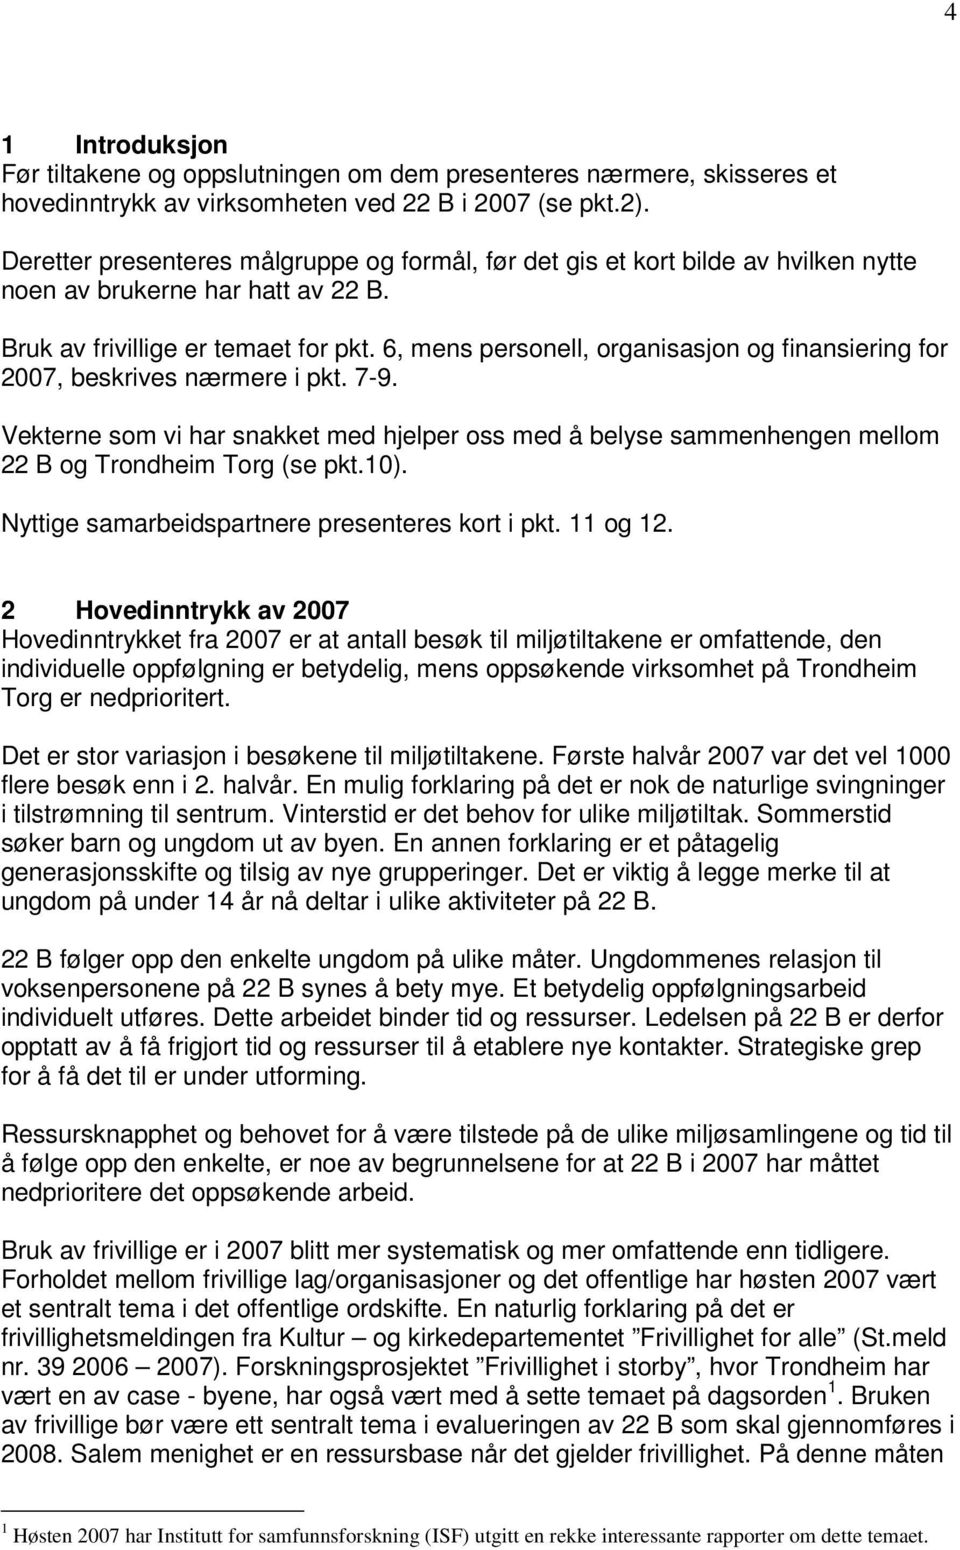 6, mens personell, organisasjon og finansiering for 2007, beskrives nærmere i pkt. 7-9. Vekterne som vi har snakket med hjelper oss med å belyse sammenhengen mellom 22 B og Trondheim Torg (se pkt.10).